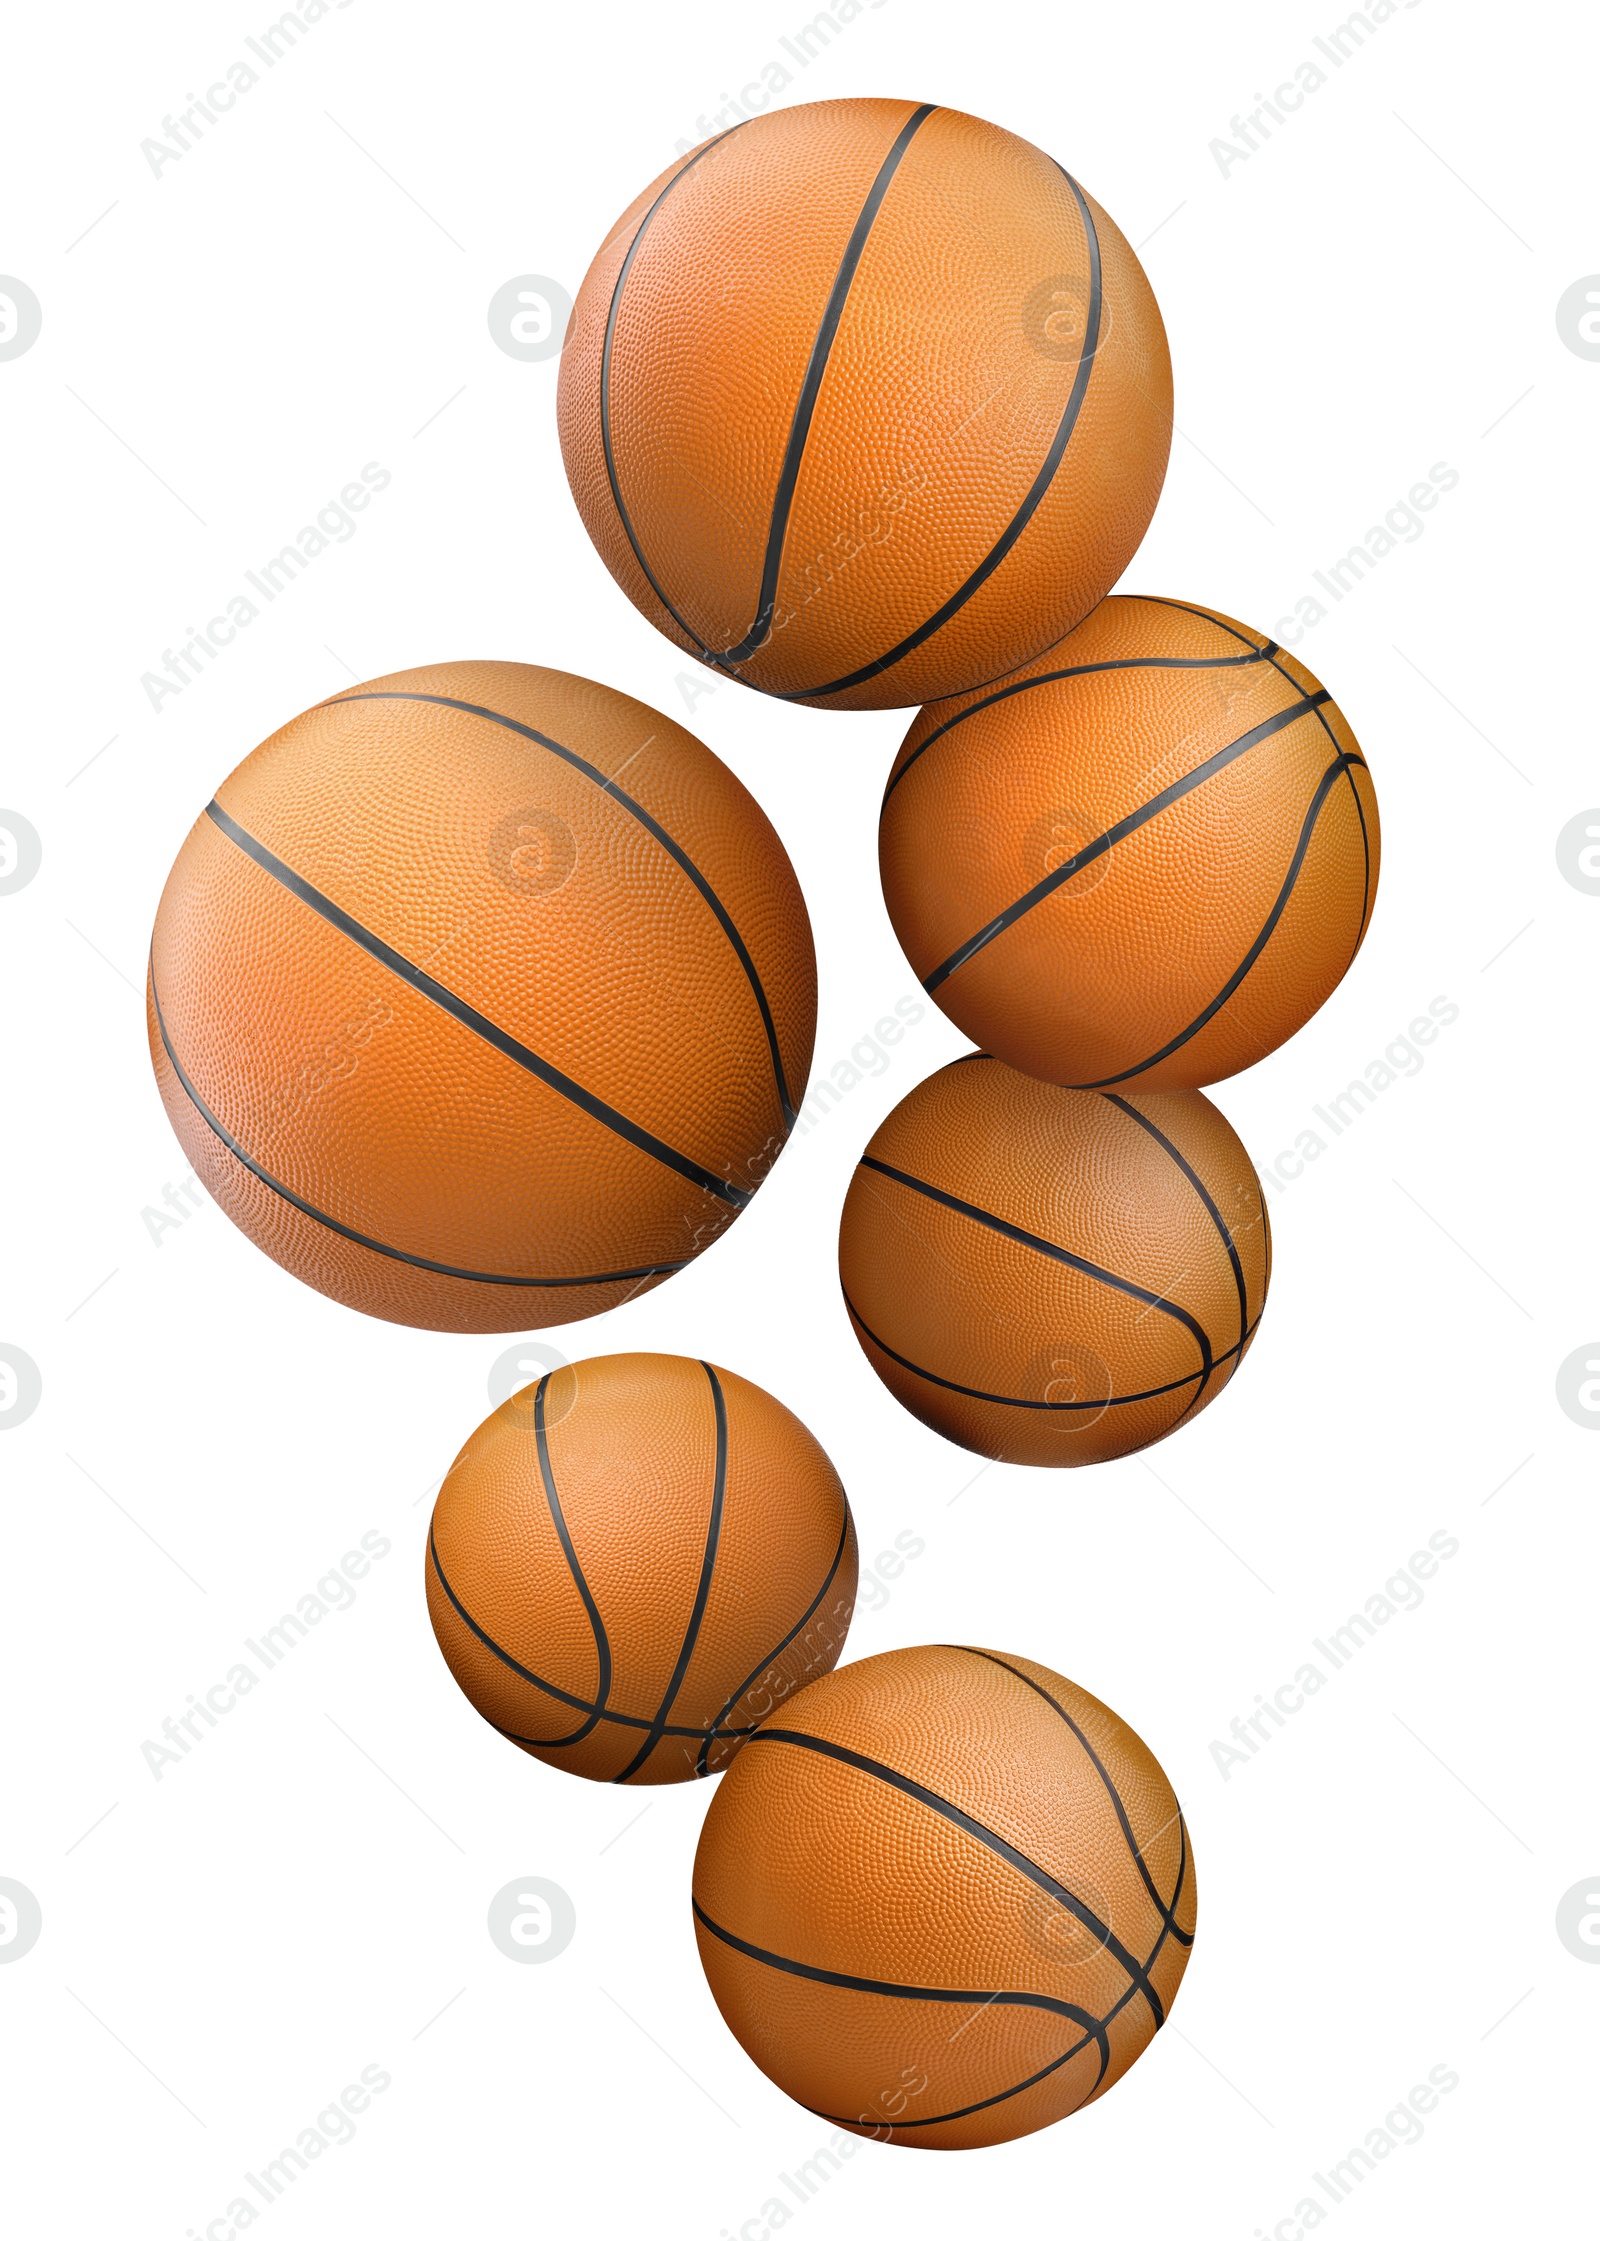 Image of Many basketball balls falling on white background